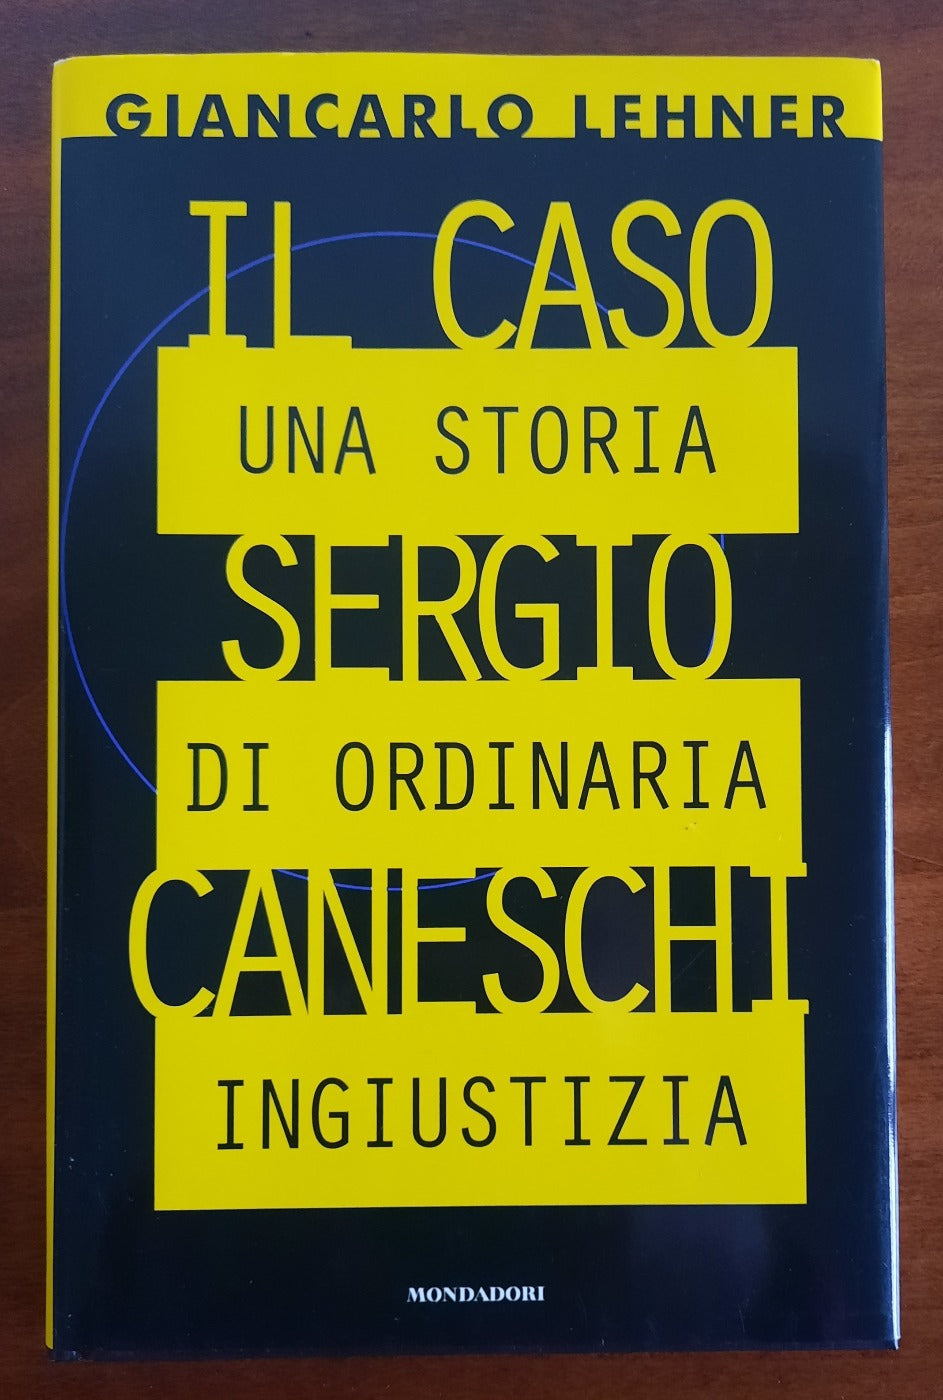 Il caso Sergio Caneschi: una storia di ordinaria ingiustizia